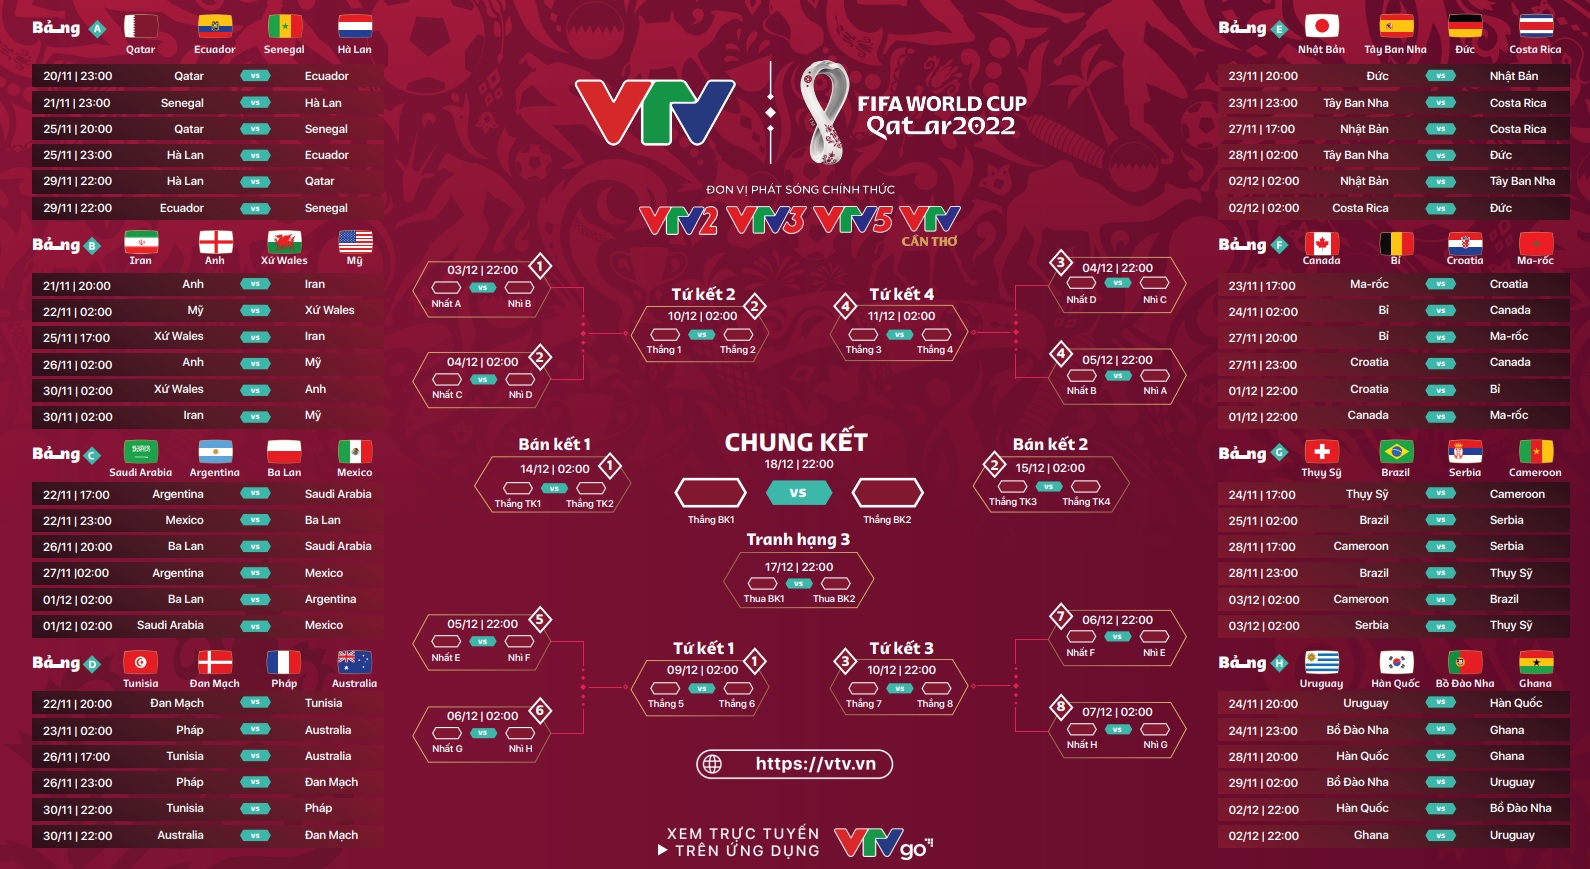 Kênh phát sóng trực tiếp World Cup 2022 trên VTV